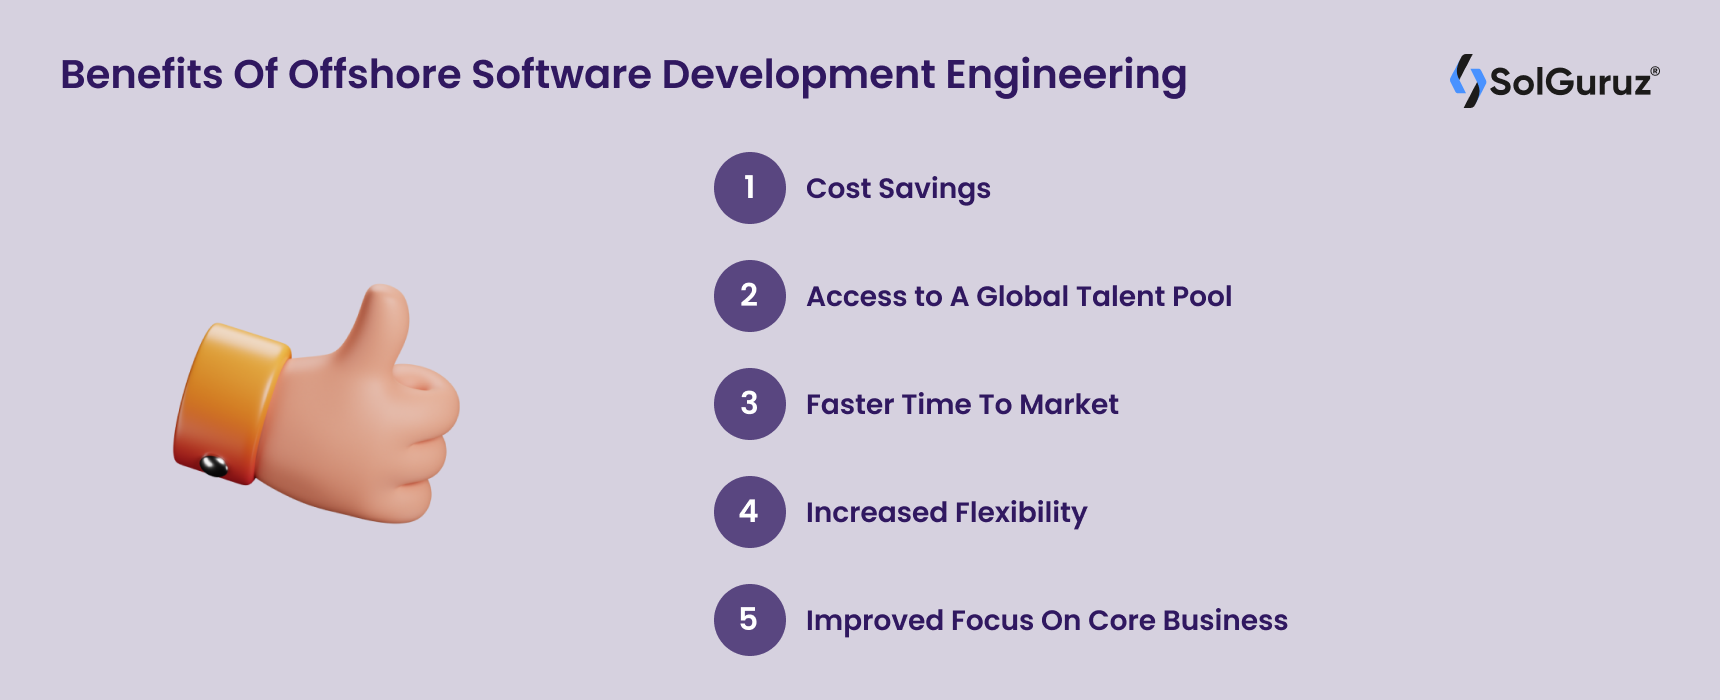 Benefits Of Offshore Software Development Engineering